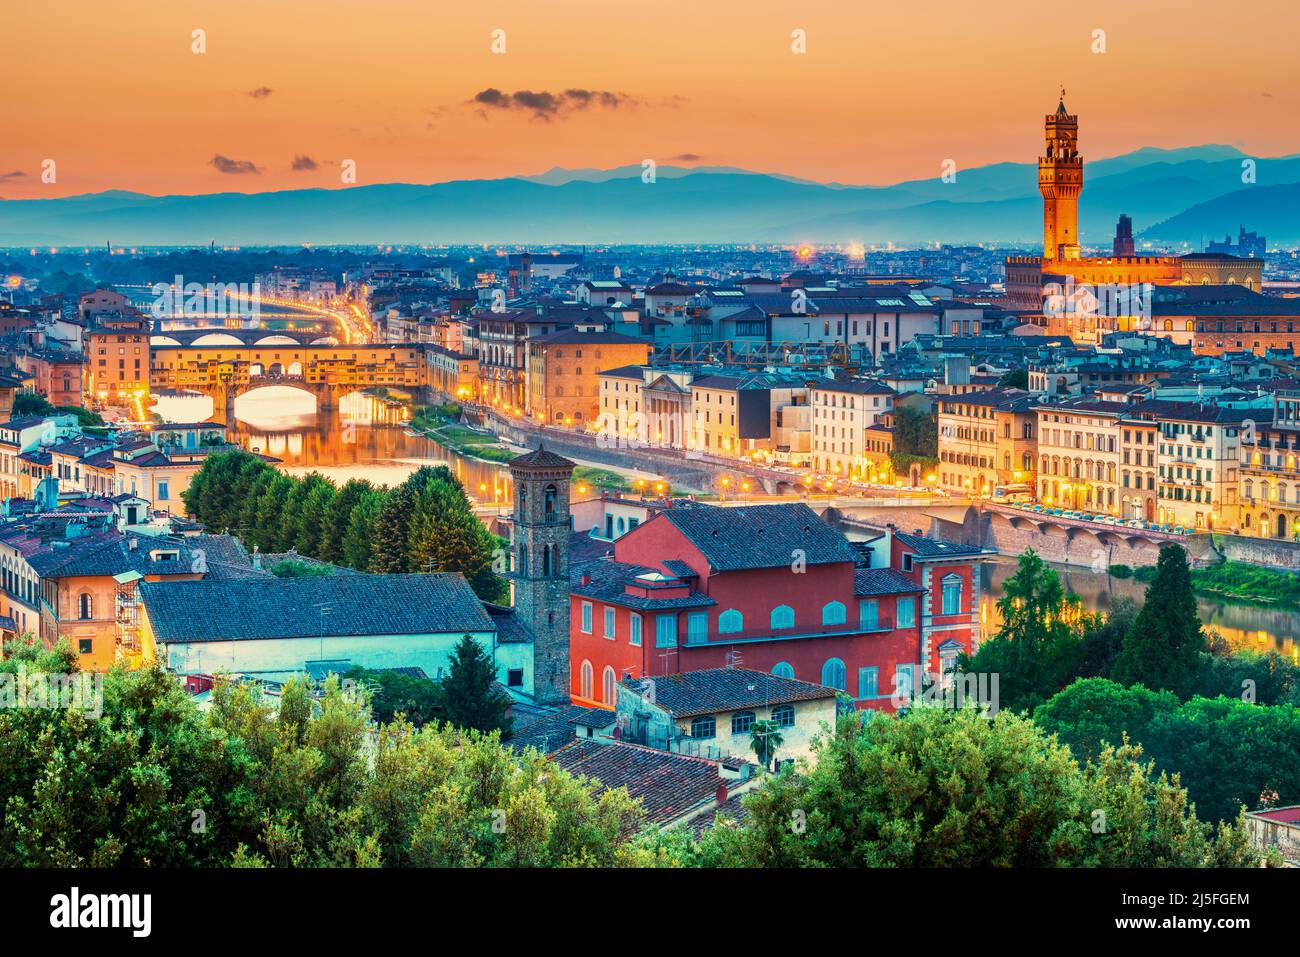 Sonnenuntergang über Florenz, Ponte Vecchio und Palazzo Vecchio, Italien. Architektur und Wahrzeichen von Florenz, Skyline von Florenz. Stockfoto